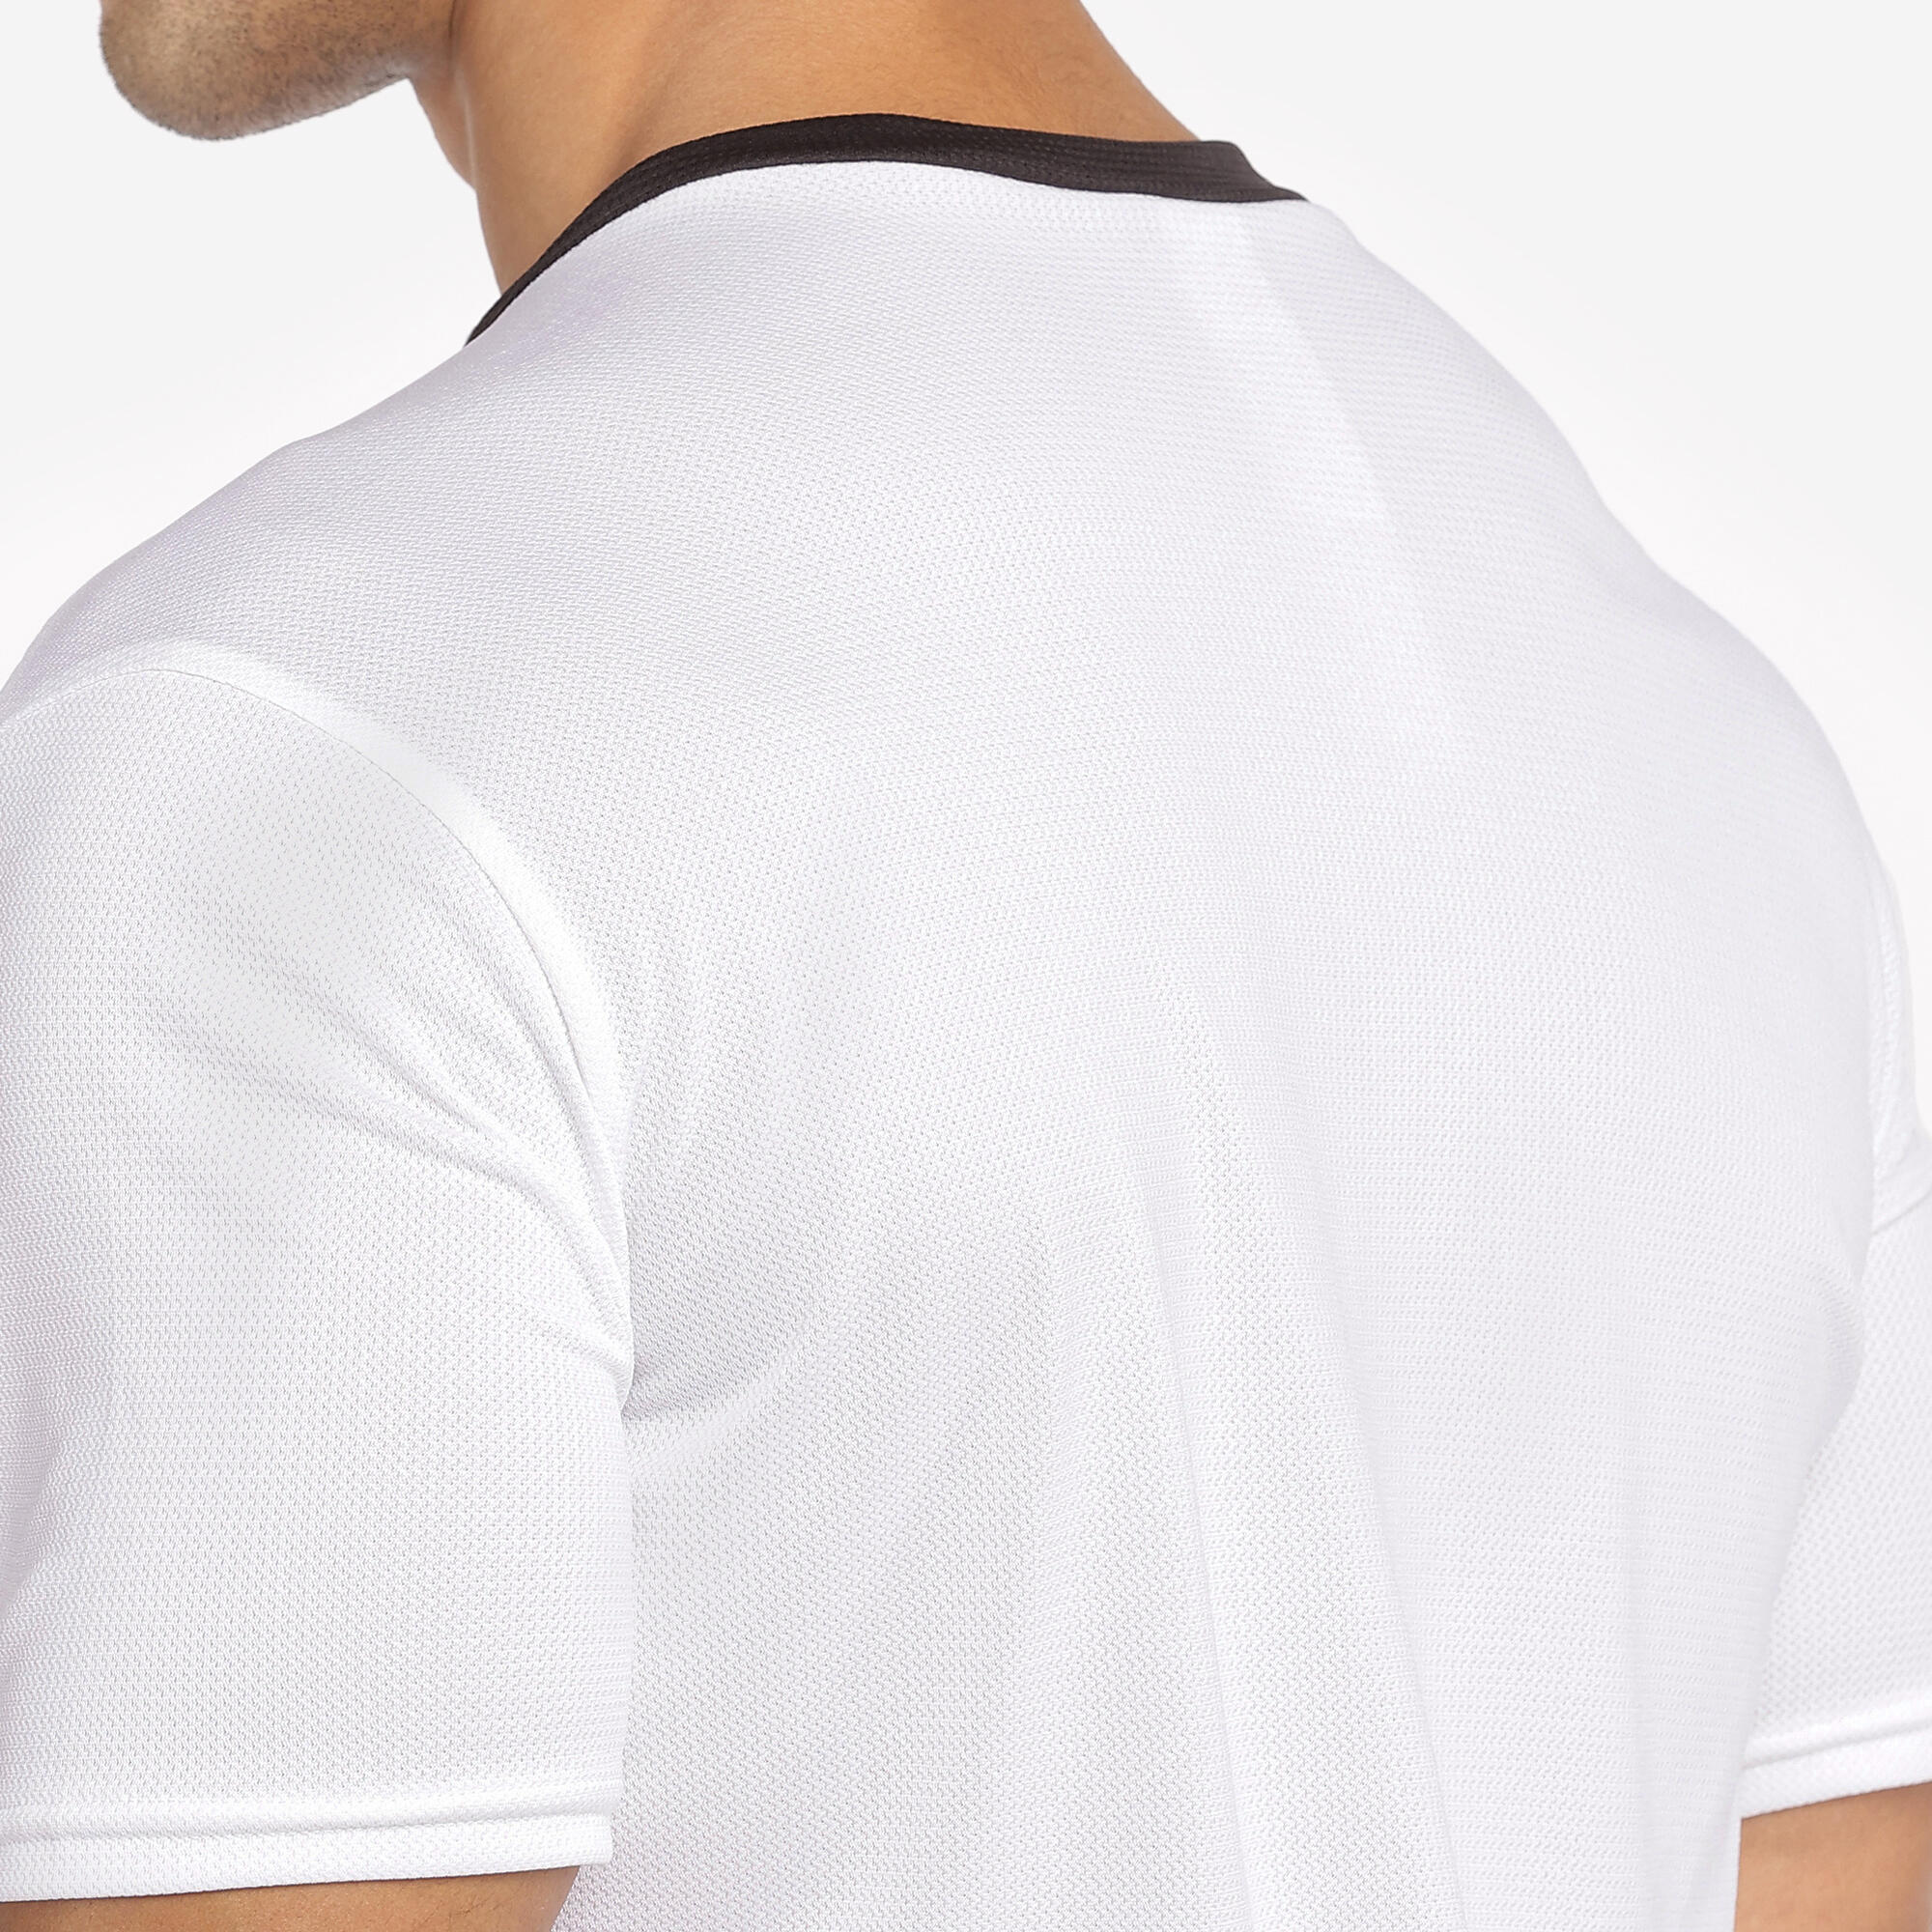 Adult Football Shirt Essential Club - White 2/29